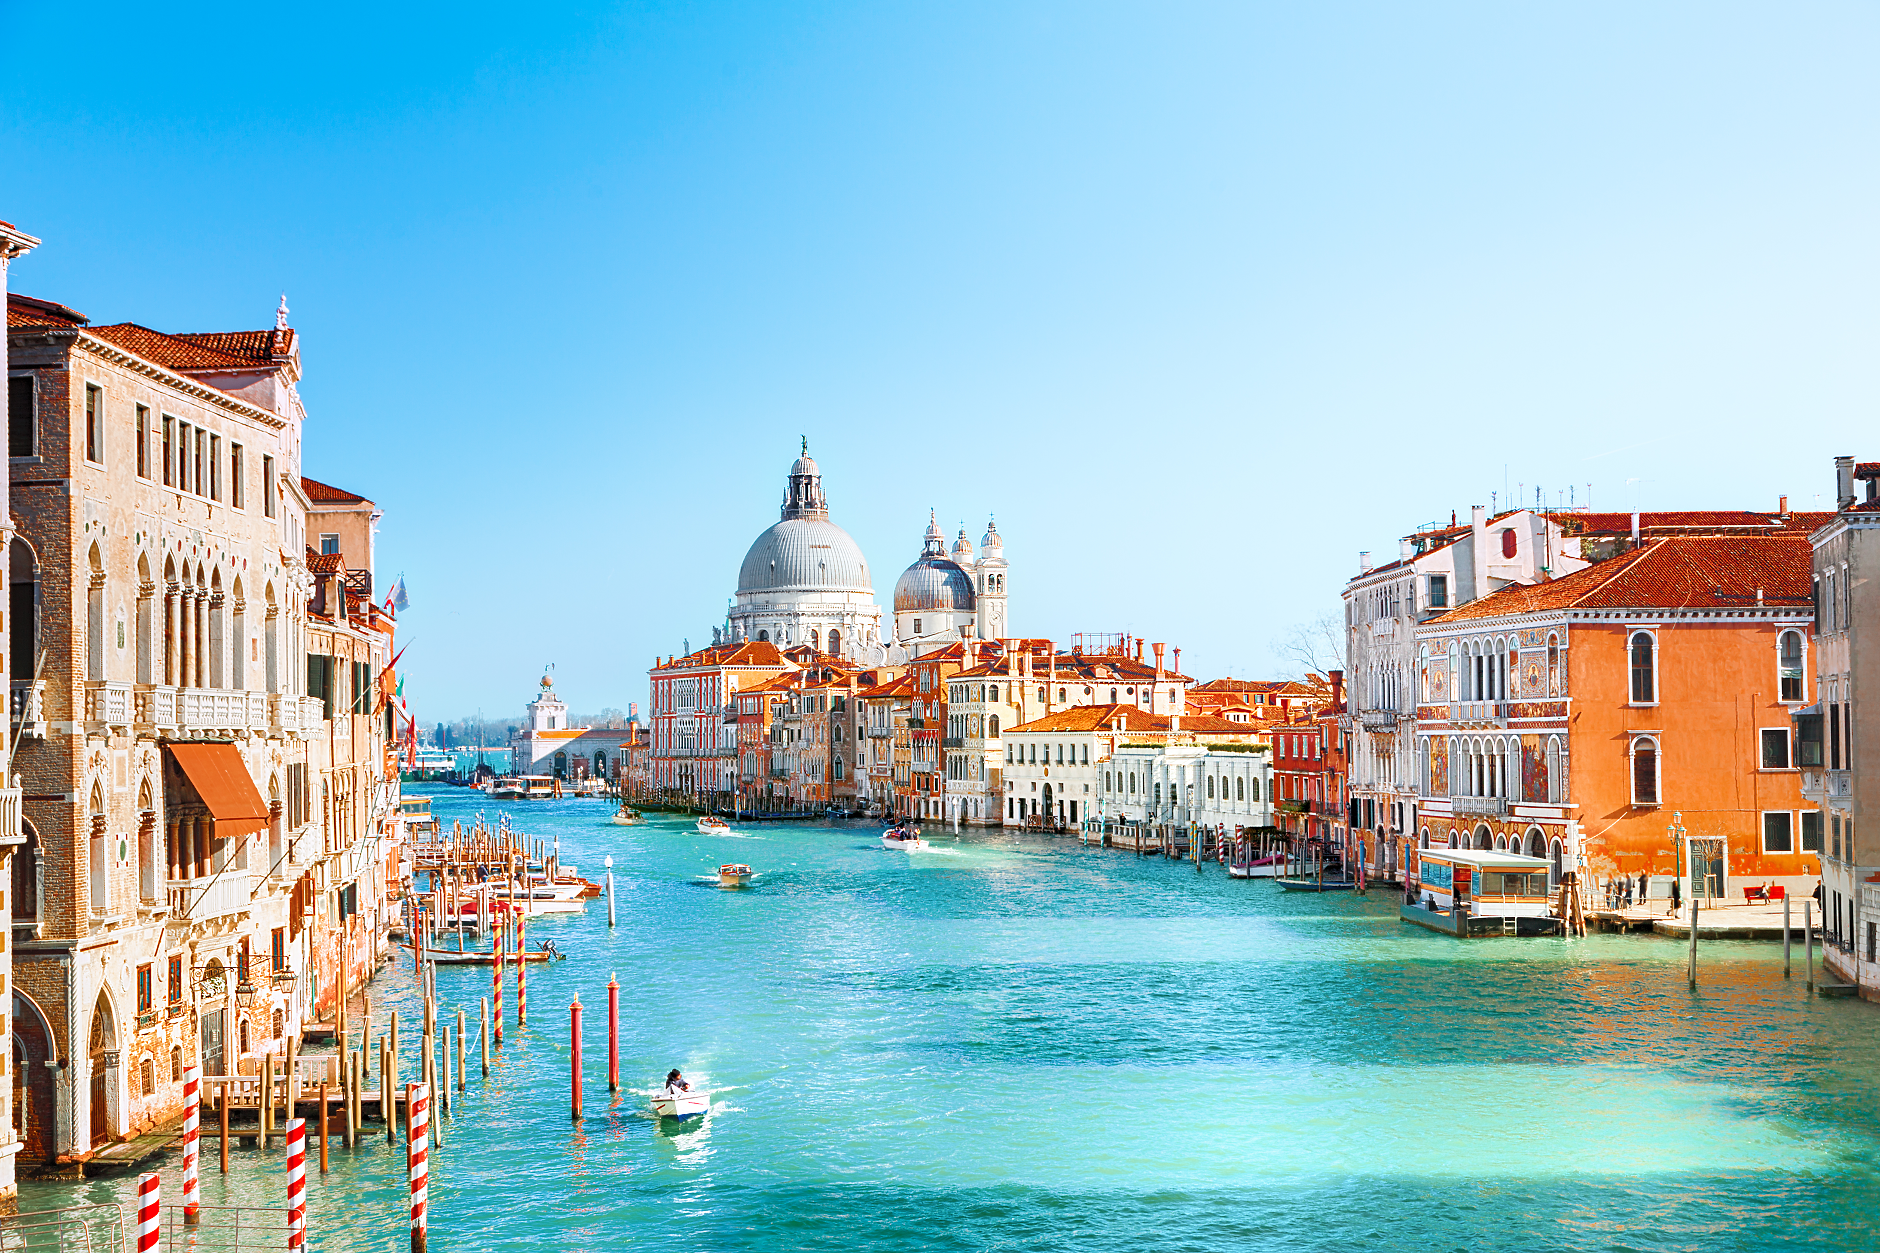 ЮНЕСКО препоръчва Венеция да бъде включена в списъка на застрашеното културно наследство